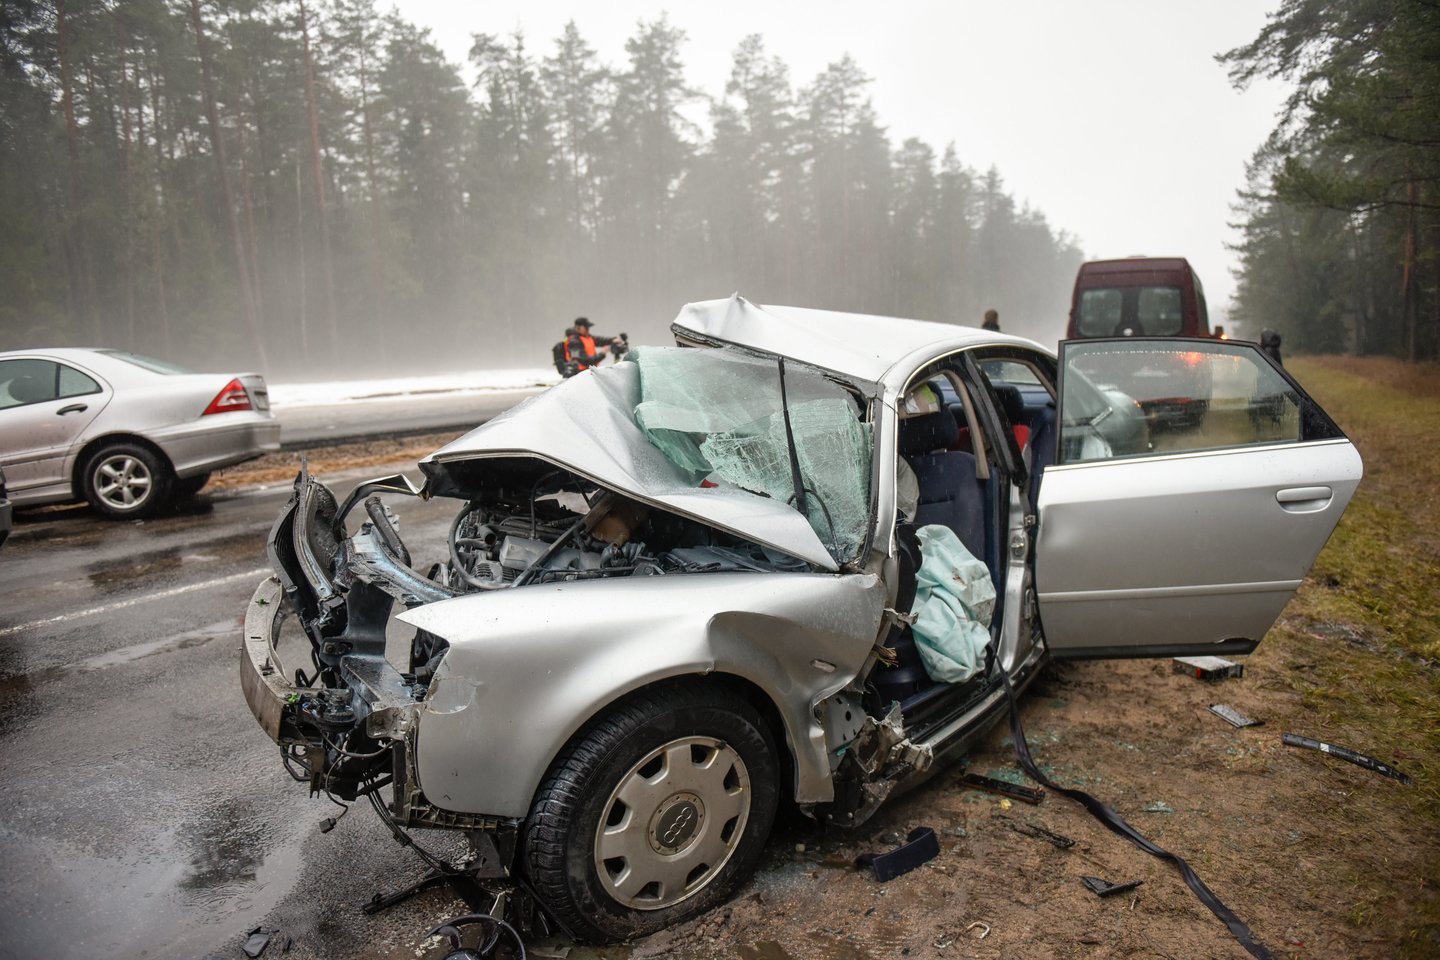  Per avariją susidūrus 4 automobiliams, žuvo 62 metų vyras. Penki sužeisti žmonės buvo nuvežti į ligoninę. <br> A.Vaitkevičiaus asociatyvioji nuotr. 